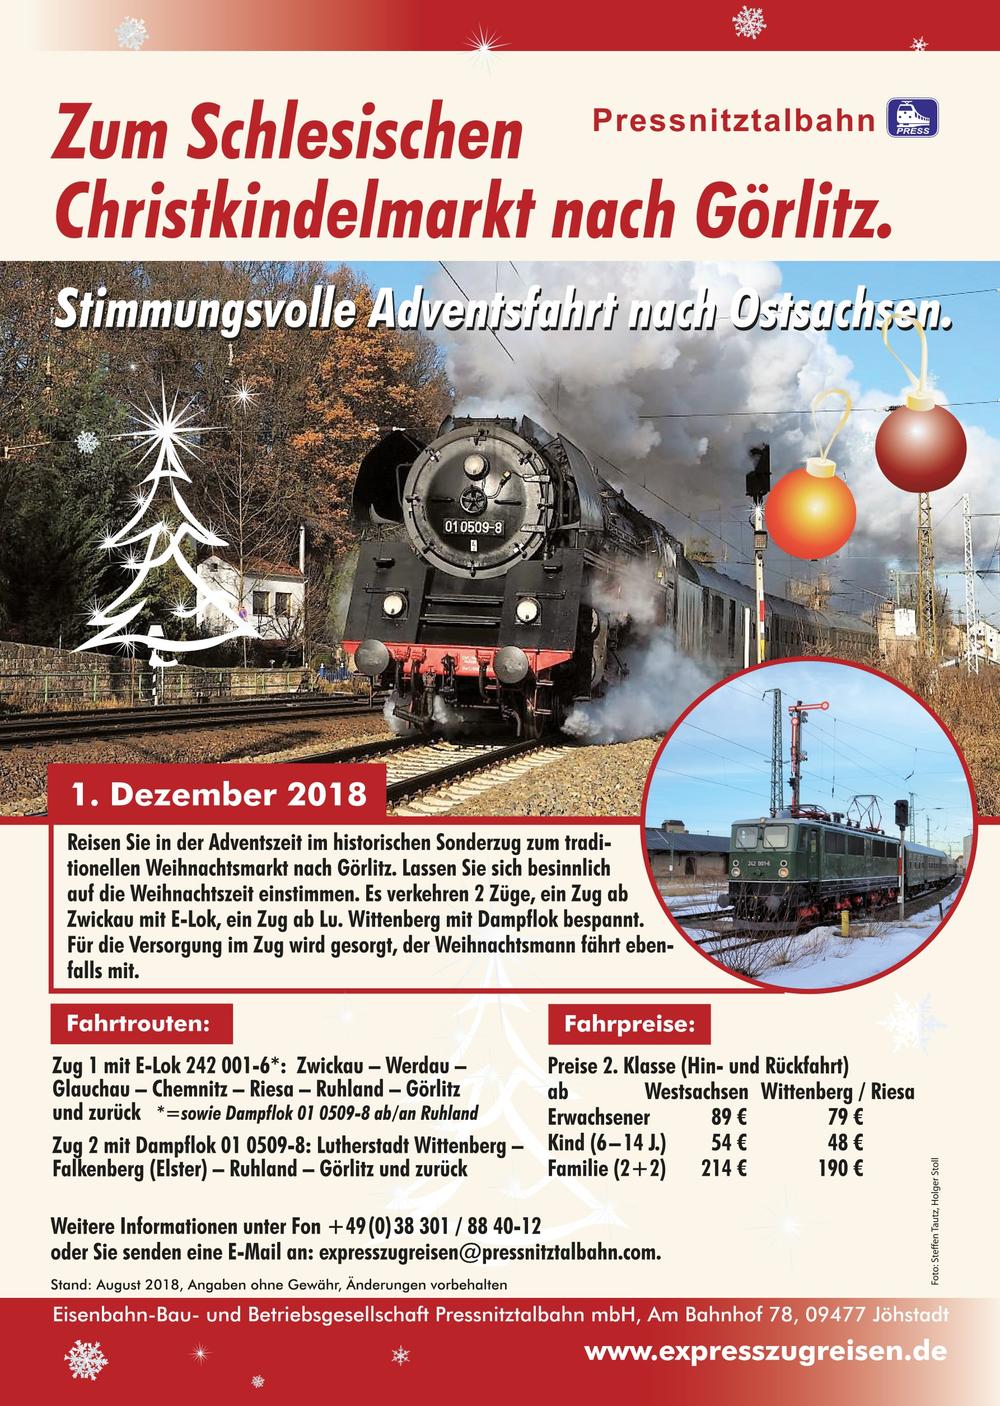 Veranstaltungsankündigung „Zum Schlesischen Christkindelmarkt nach Görlitz“ am 1. Dezember 2018